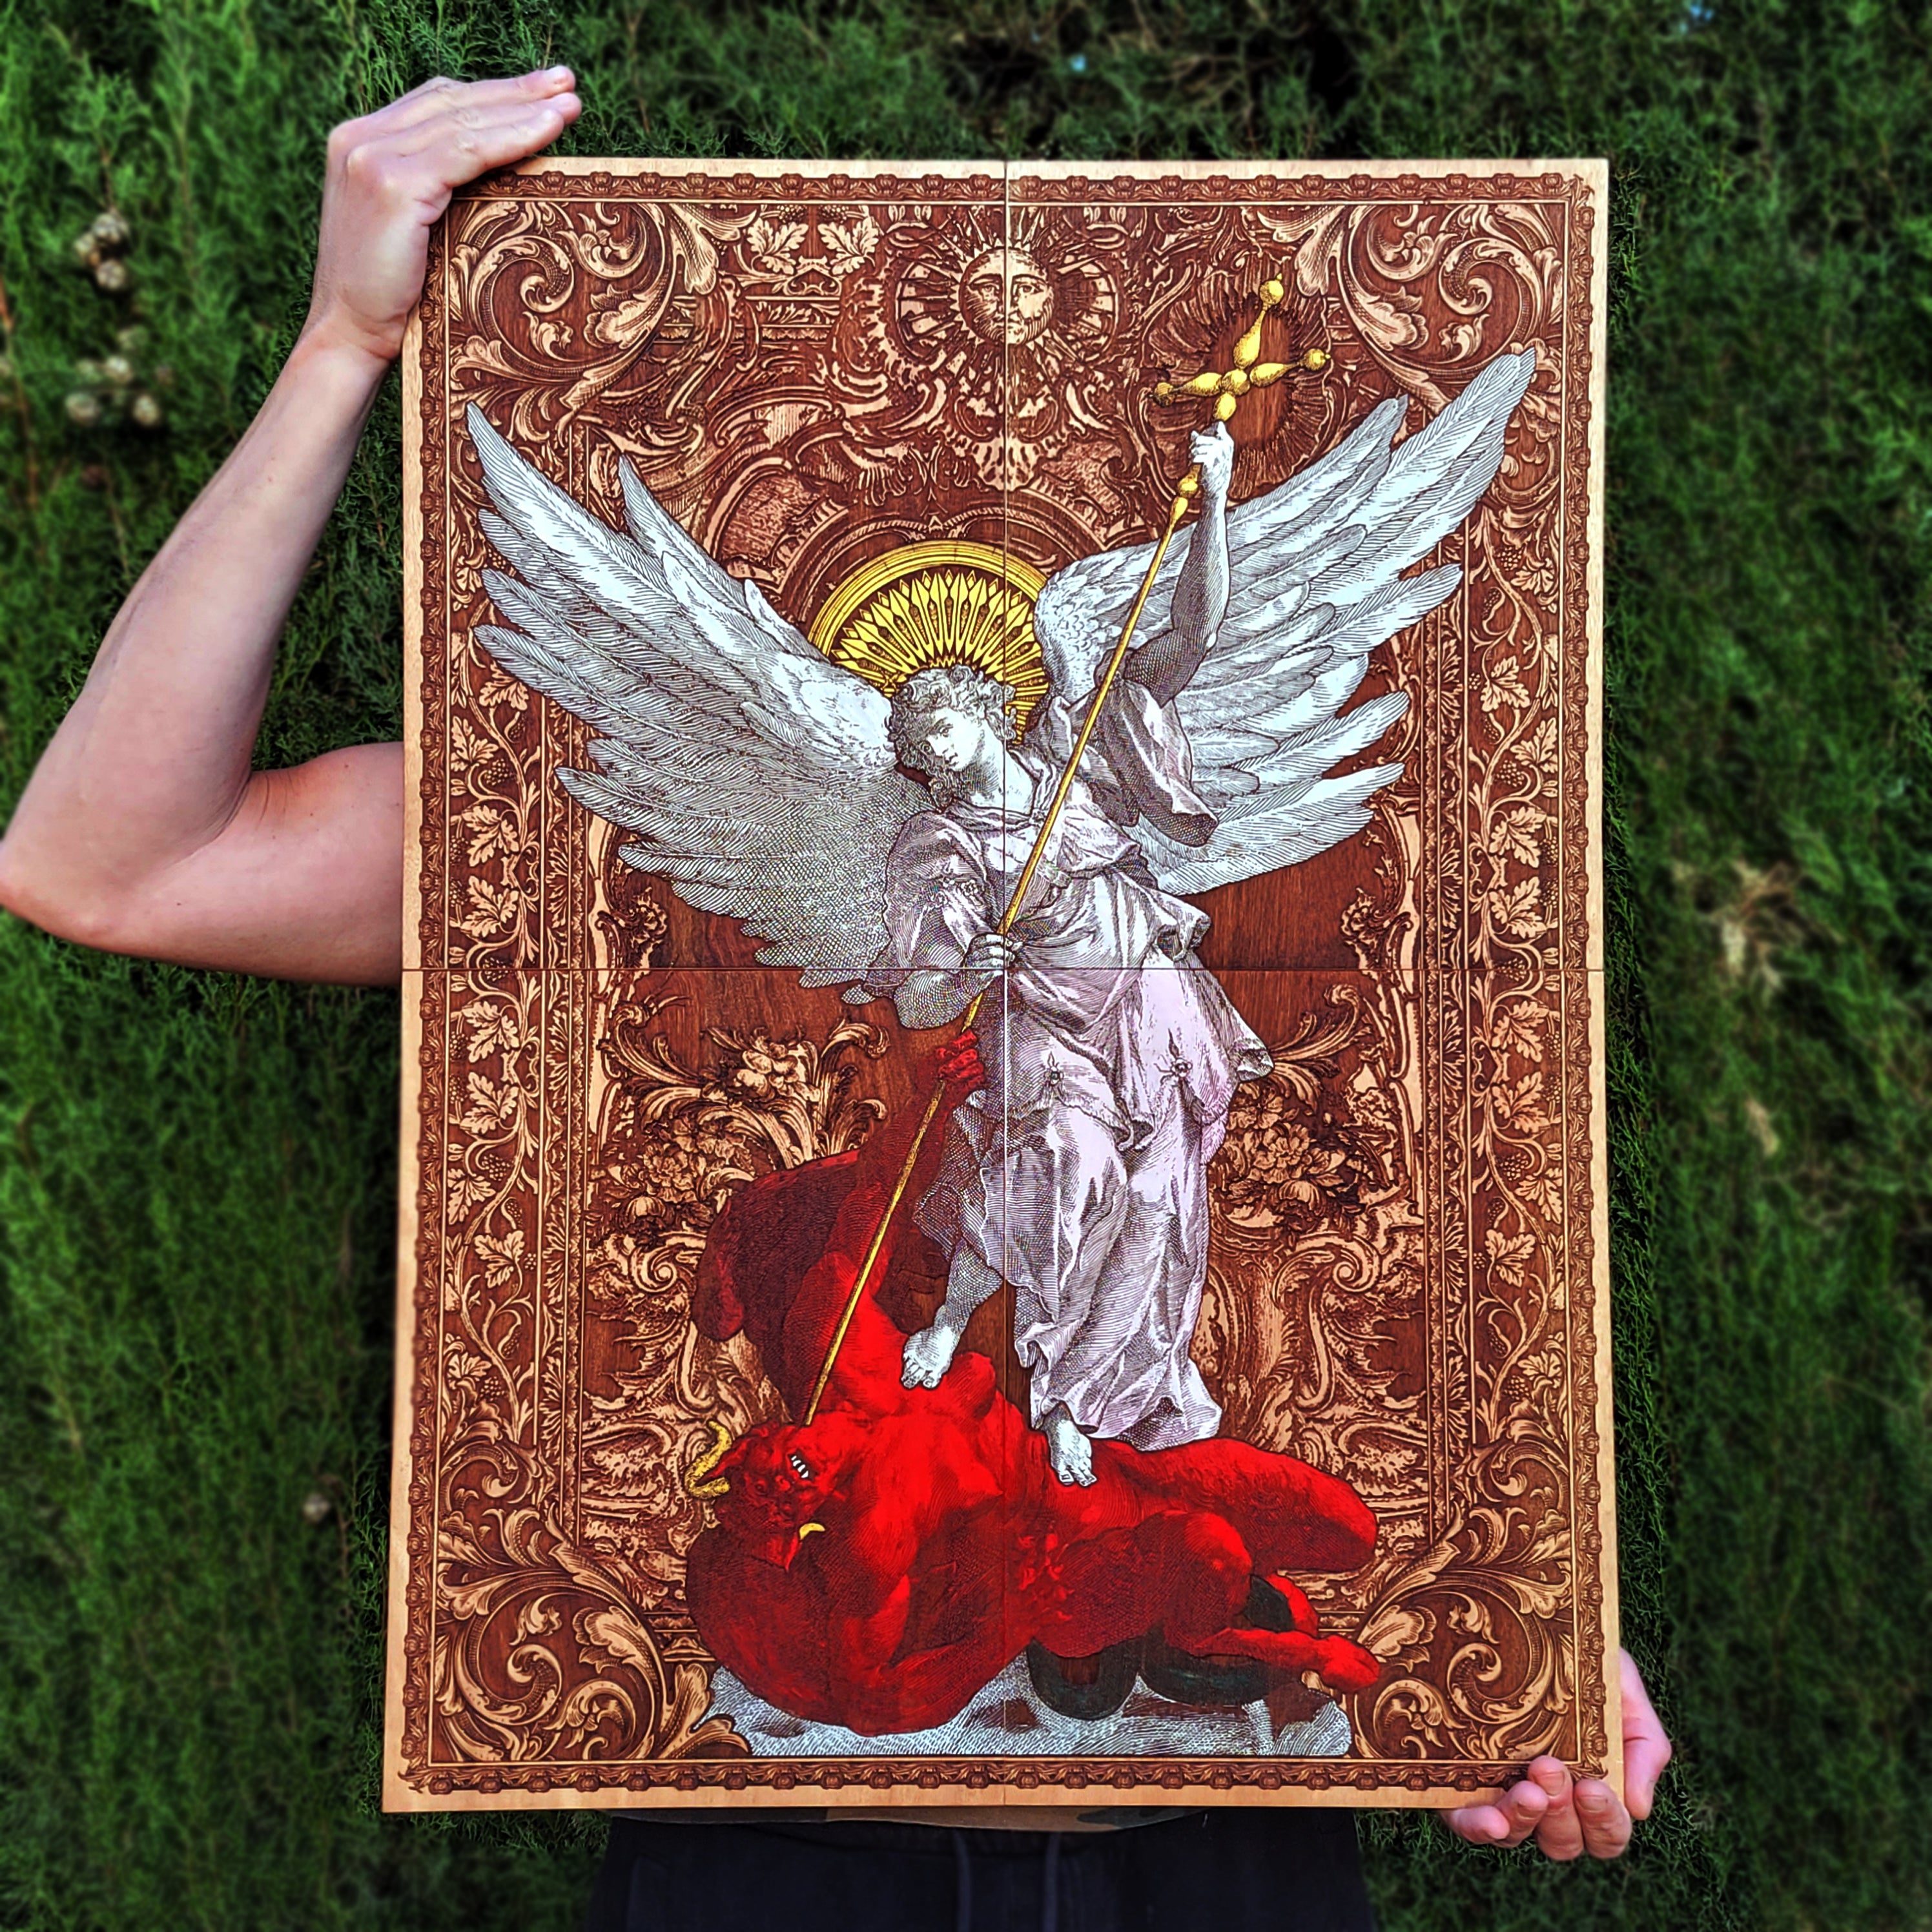 St Michael The Archangel - Mega Size - 4 Wood Pieces